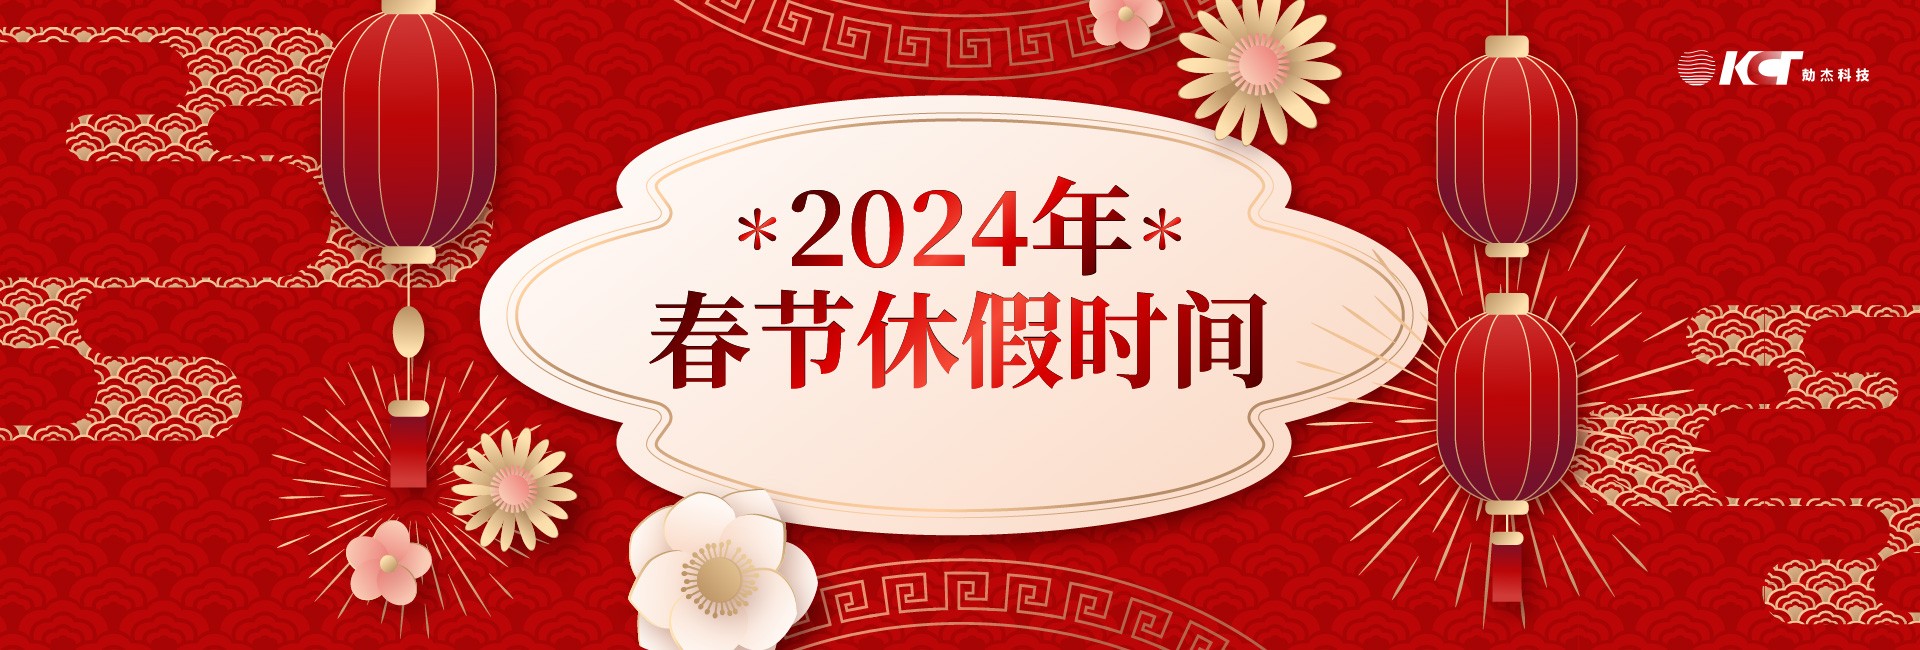 【2024春节休假通知】龙转乾坤 好运一条龙